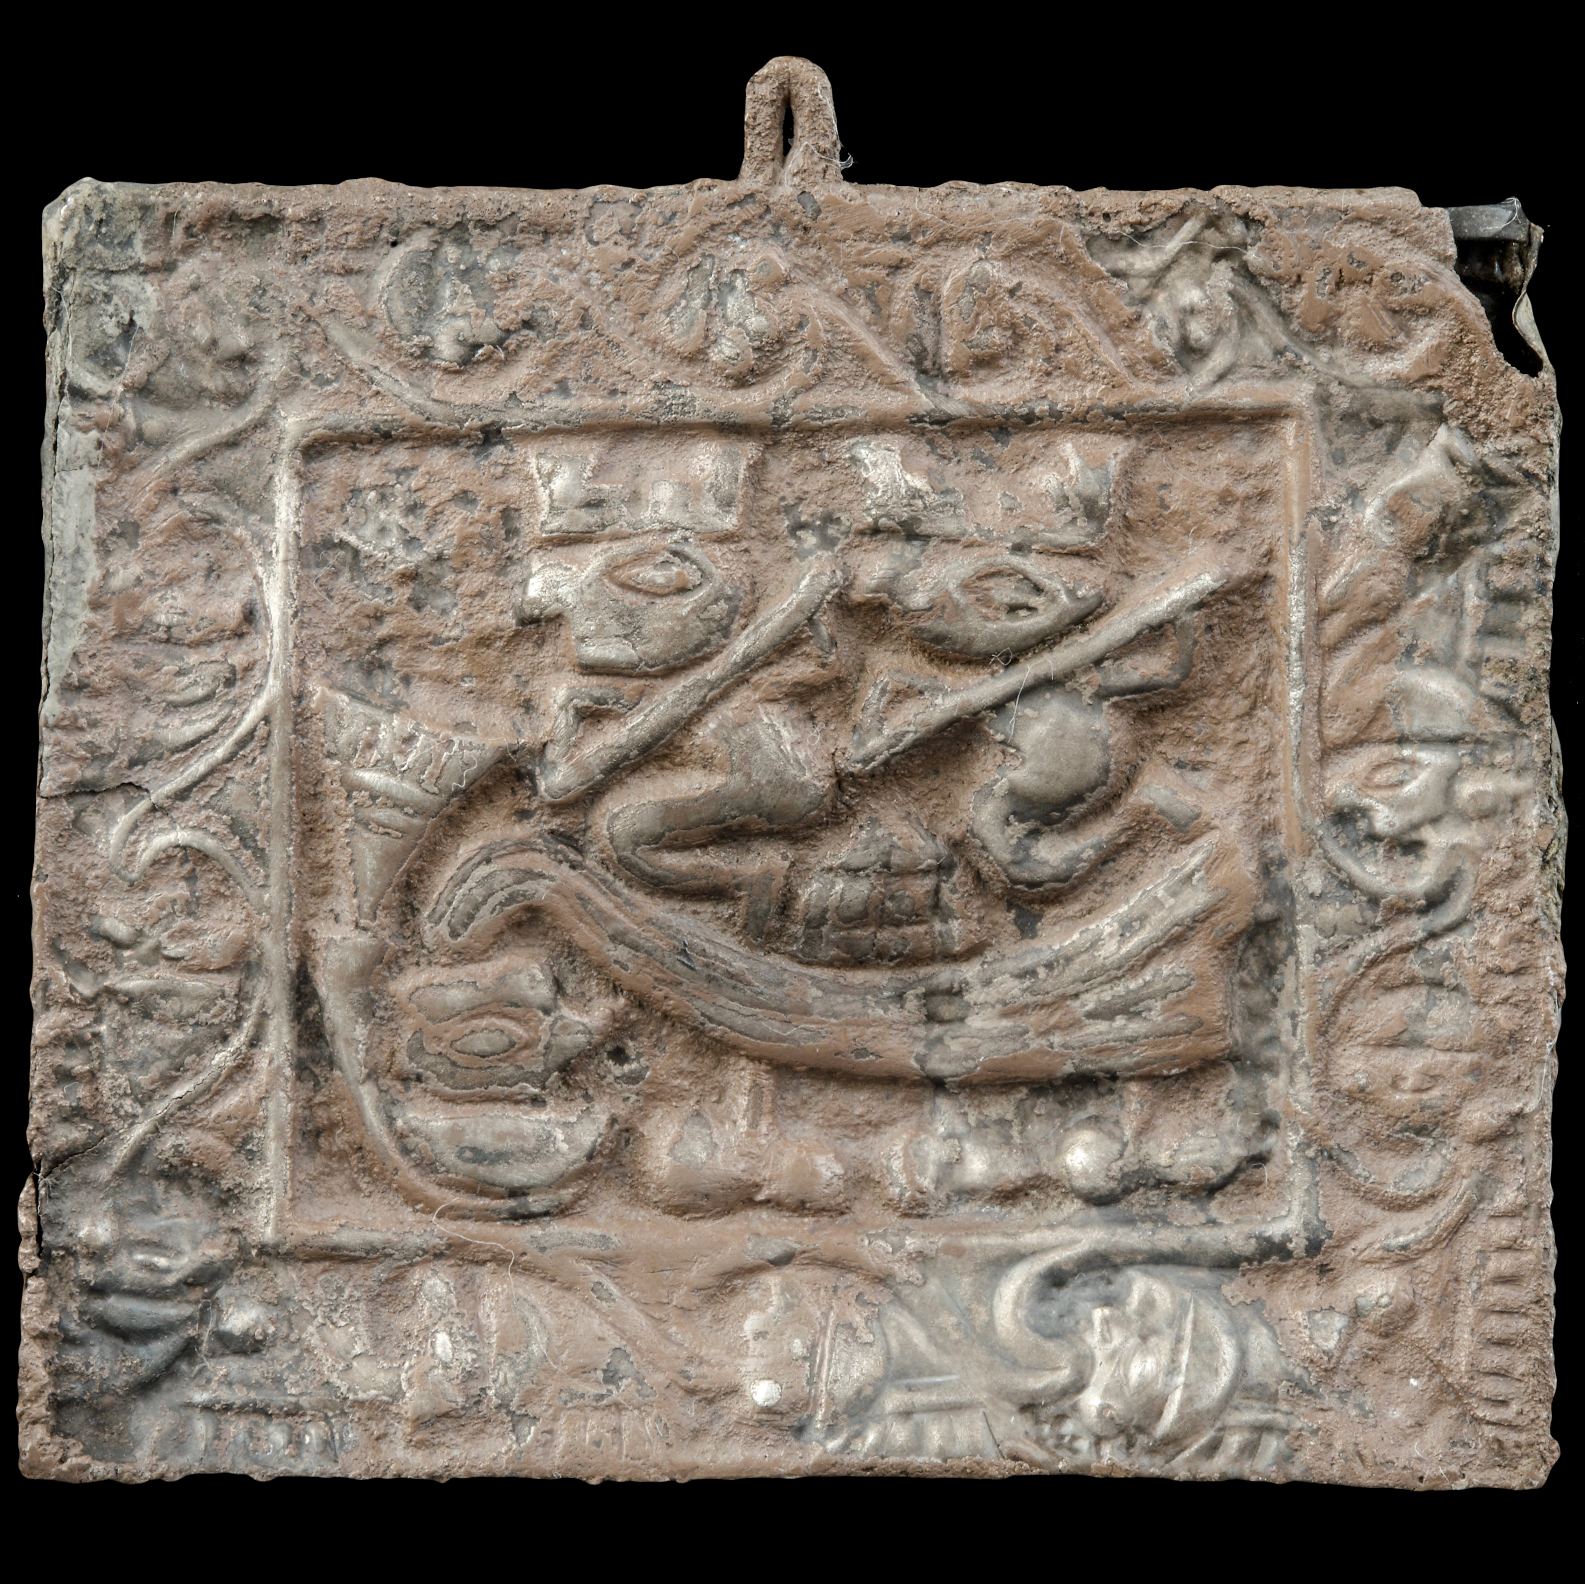 Серебряный кулон. Ламбаеке, 1000-1350 гг. н.э. Коллекция Museo de Arte de Lima.